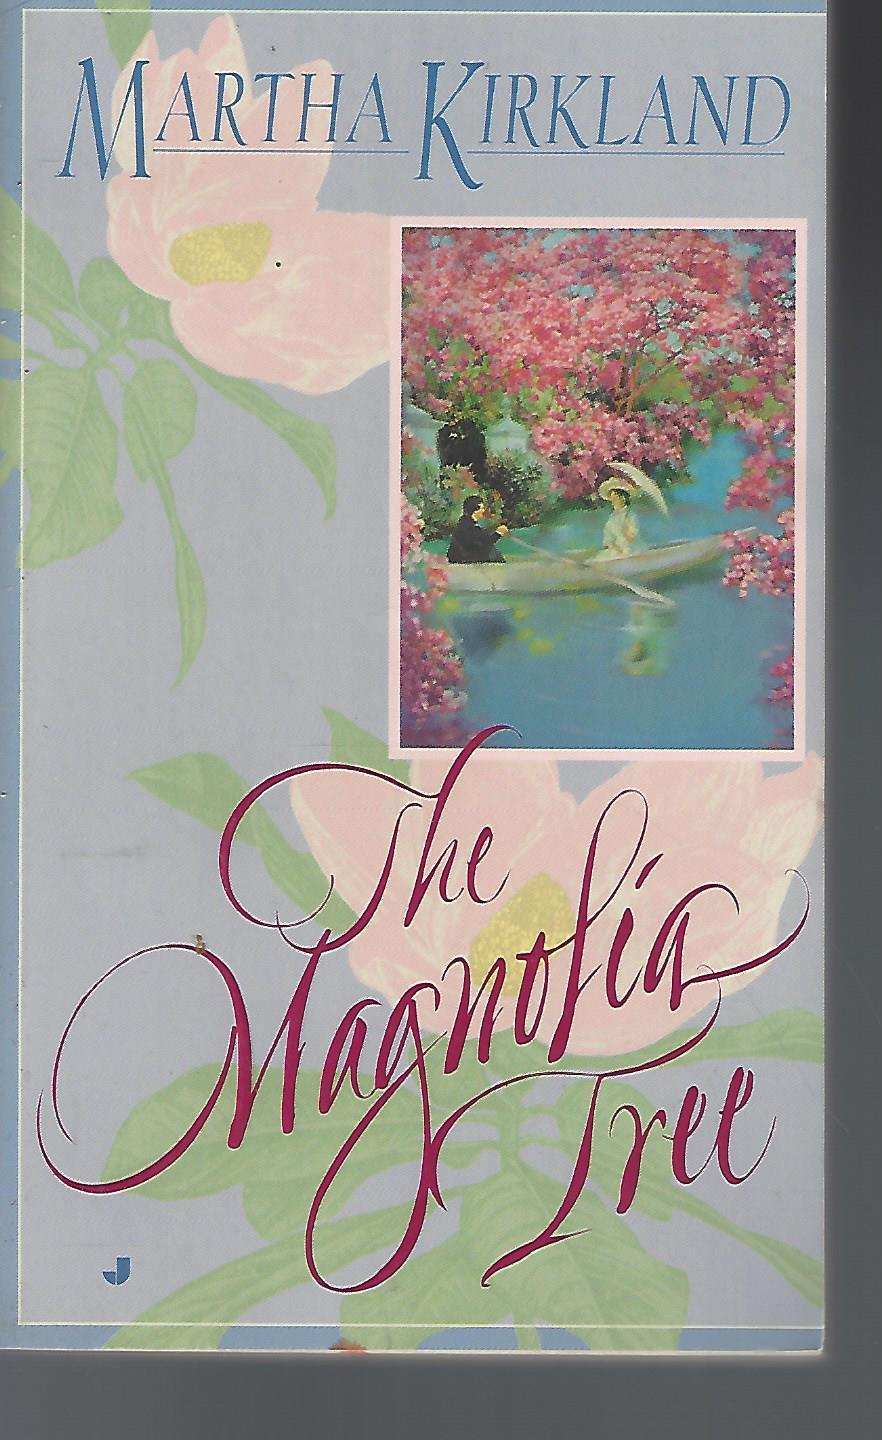 Magnolia Tree - Kirkland, Martha